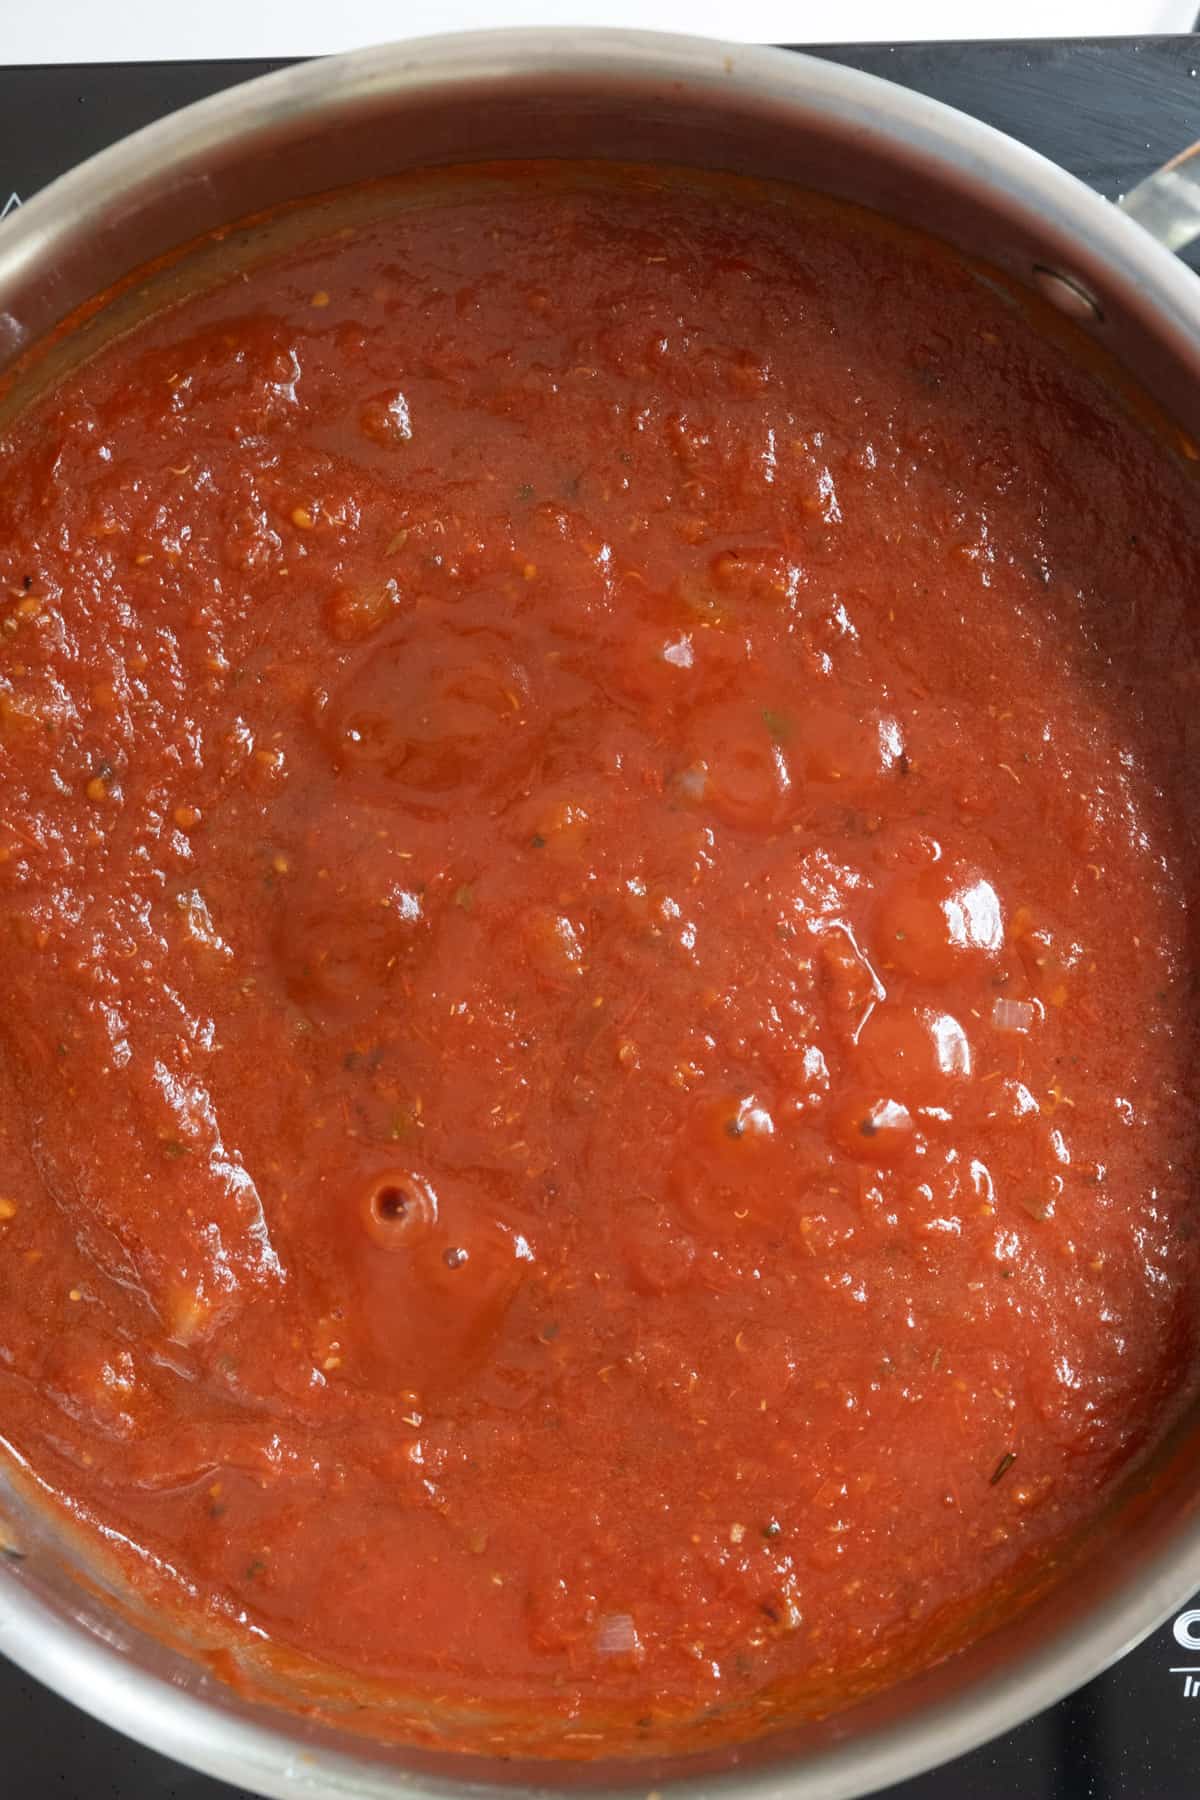 sauce beginning to simmer